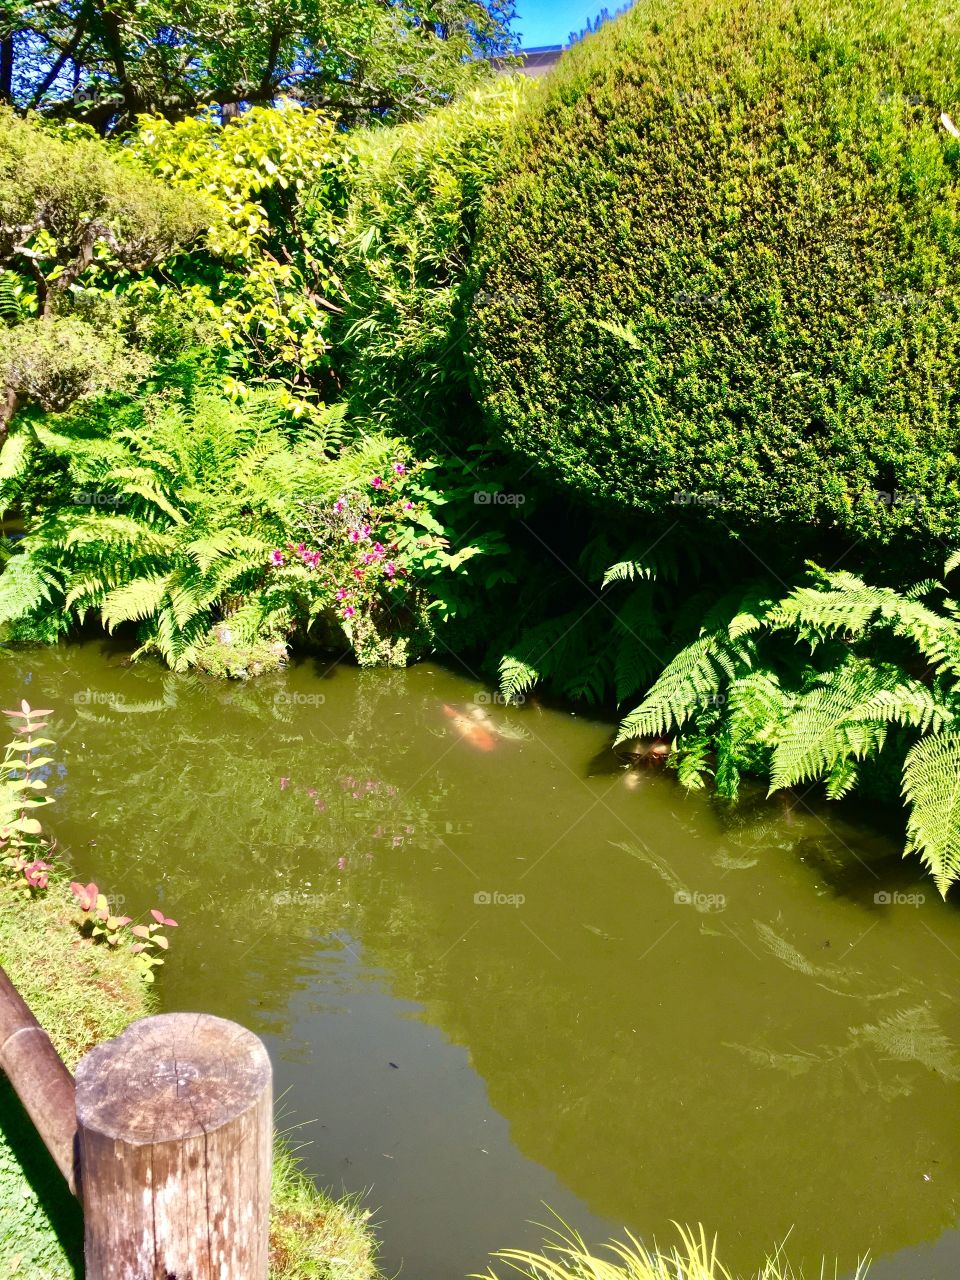 Koi in river at San Francisco tea garden